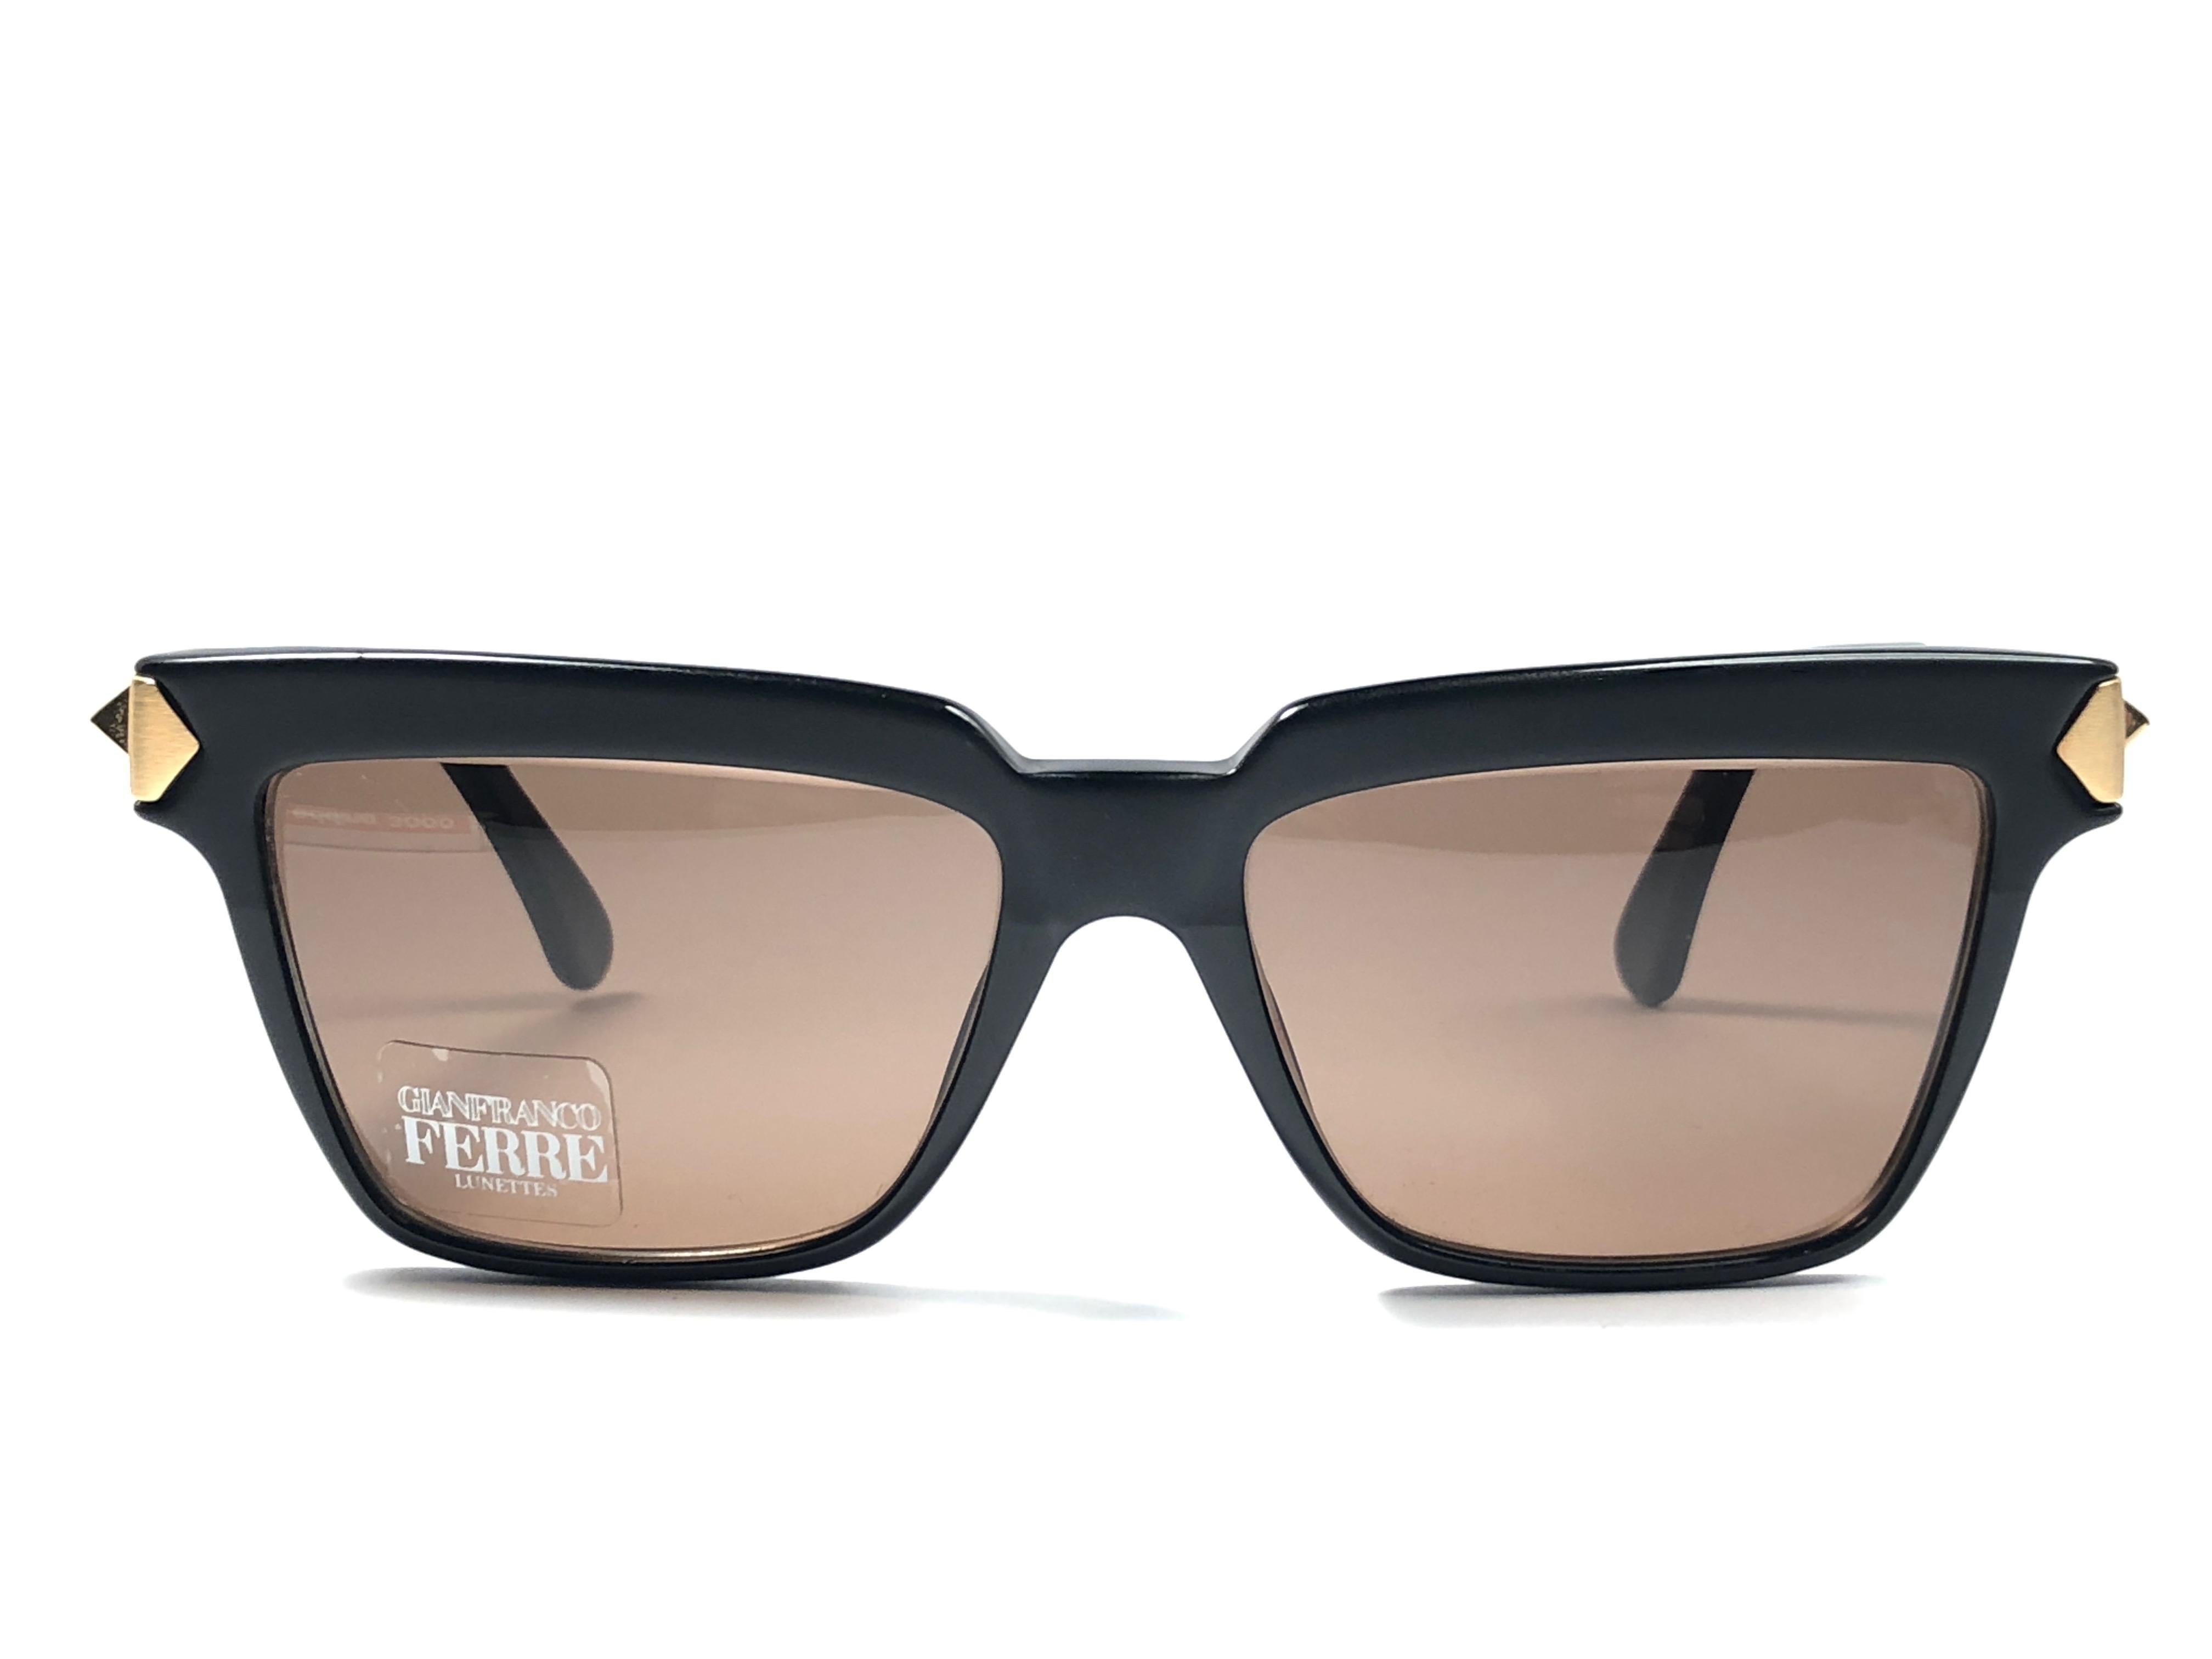 Nouvelles lunettes de soleil vintage Gianfranco Ferre.    

Monture noire avec des détails dorés tenant une paire de verres gris immaculés.   

Neuf, jamais porté ou exposé. 

 Fabriquées en Italie.